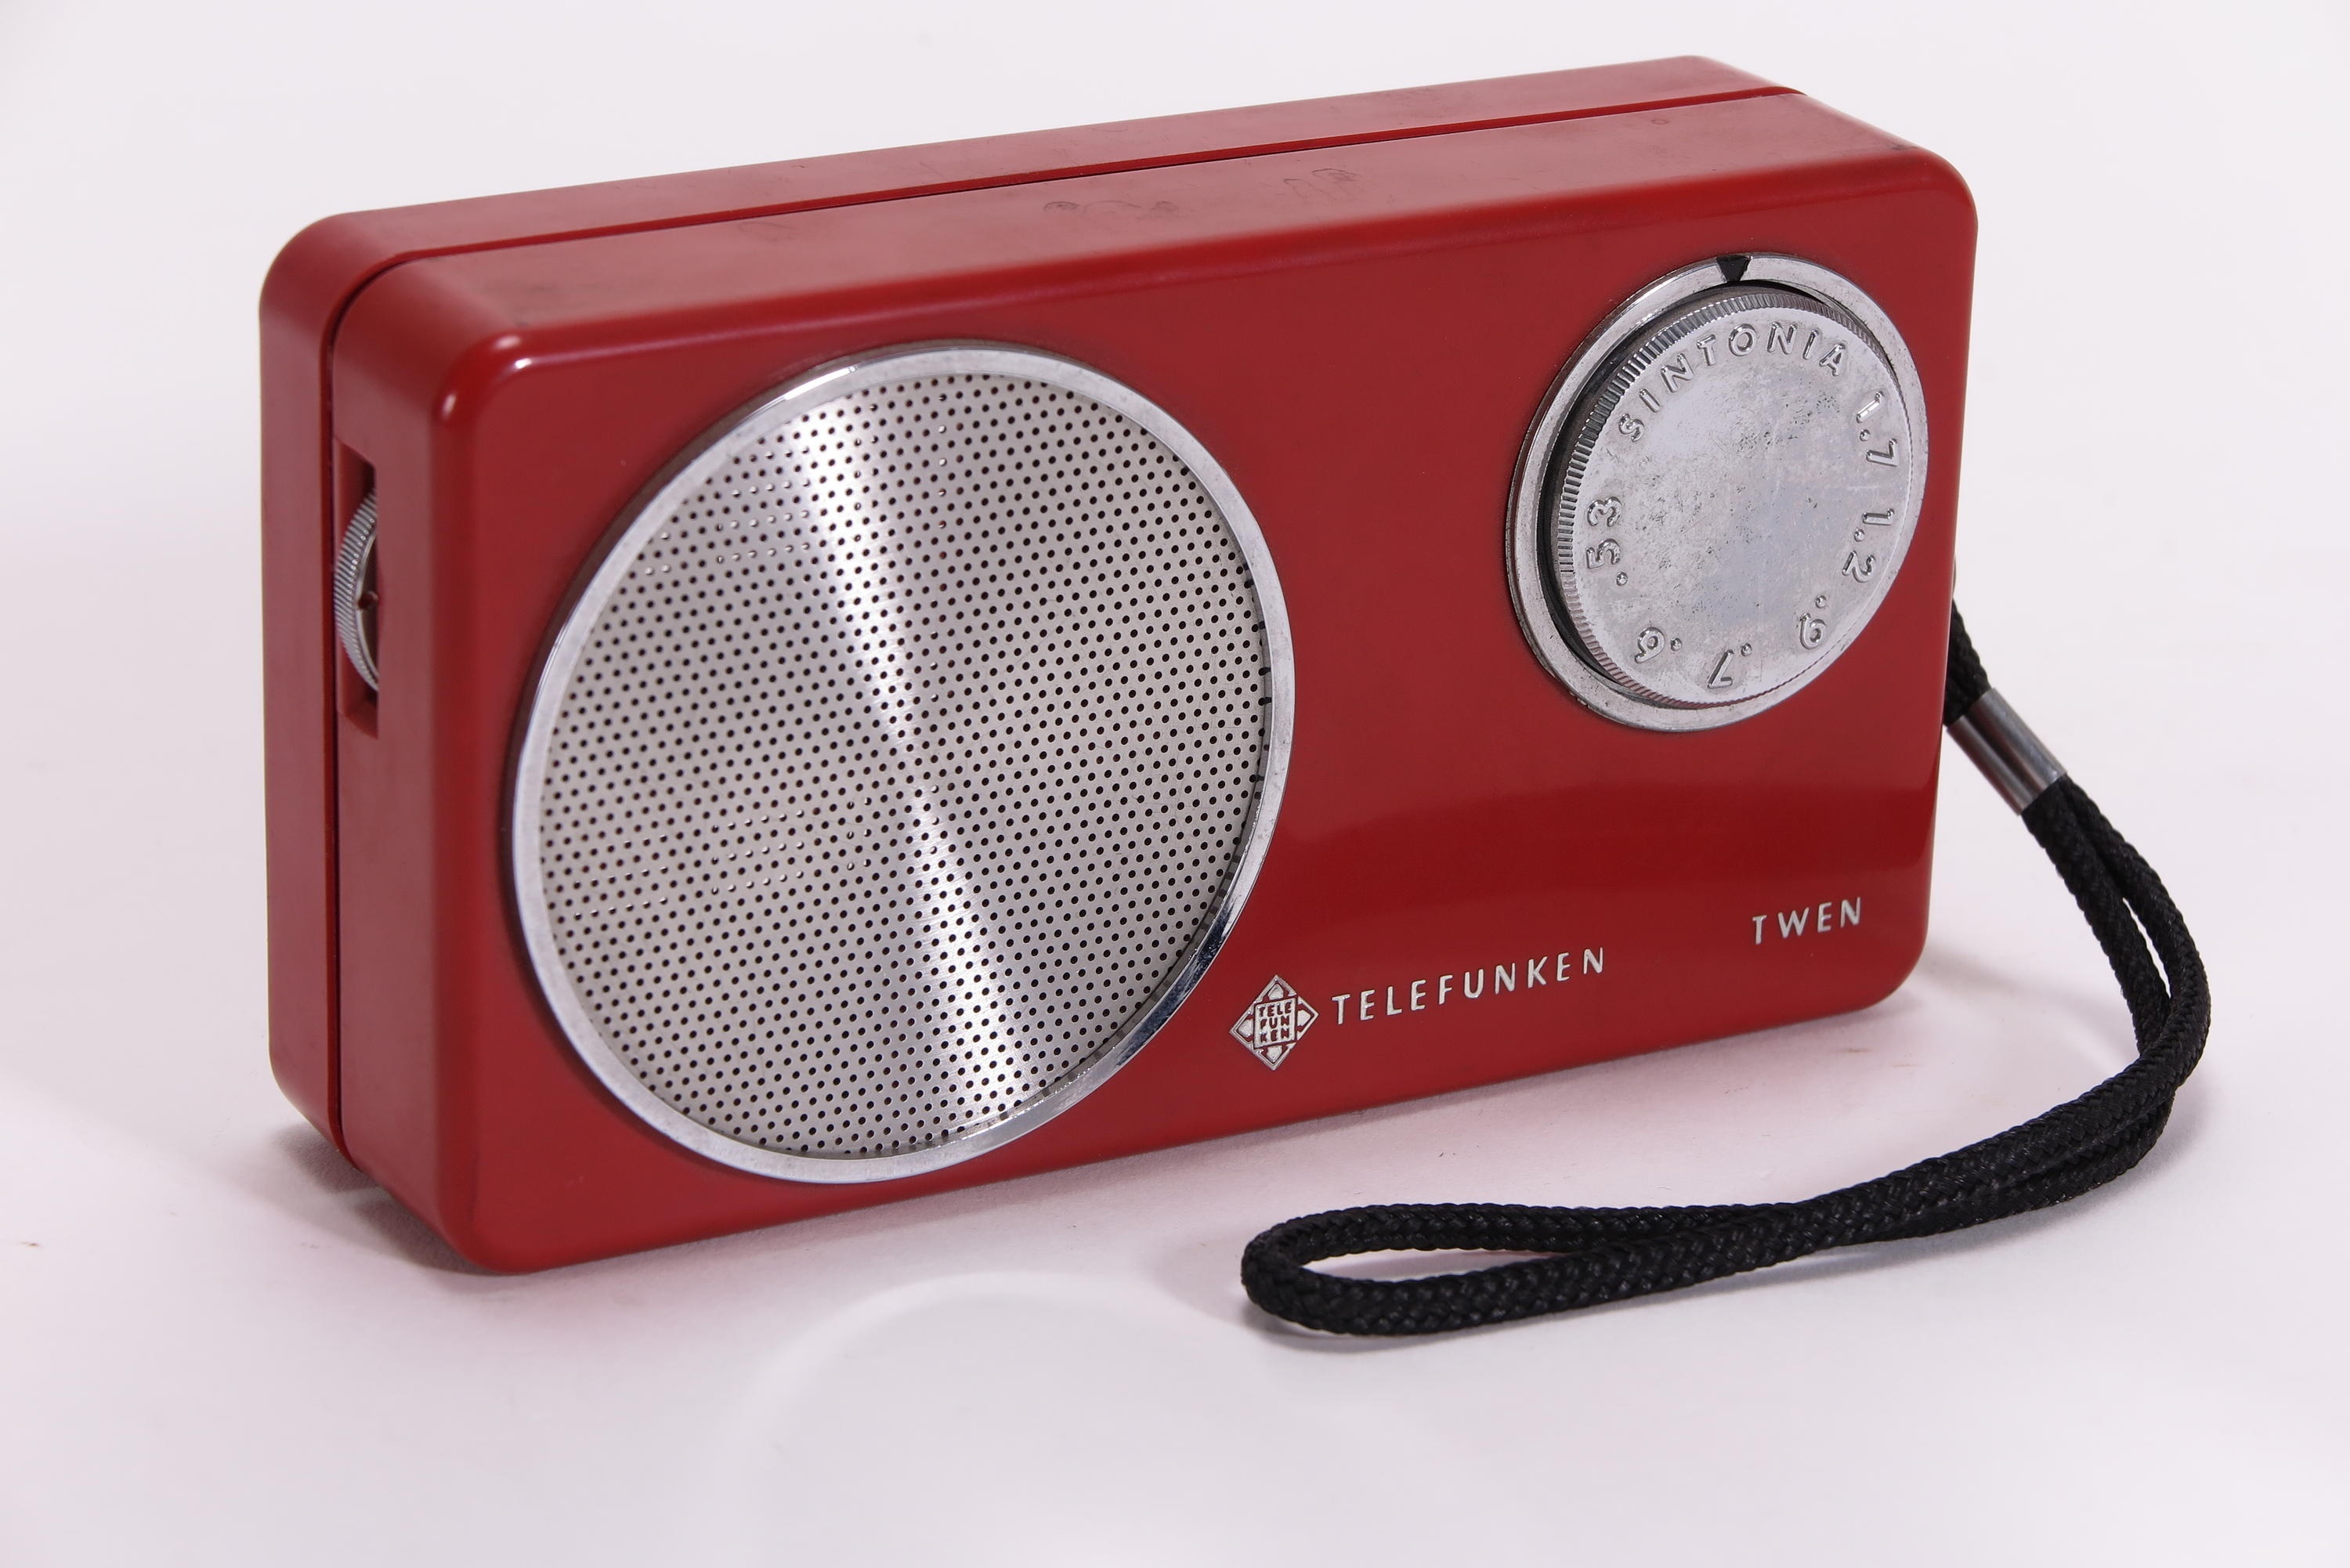 Taschenradio Telefunken Twen BT-28107 (Deutsches Technikmuseum CC BY)